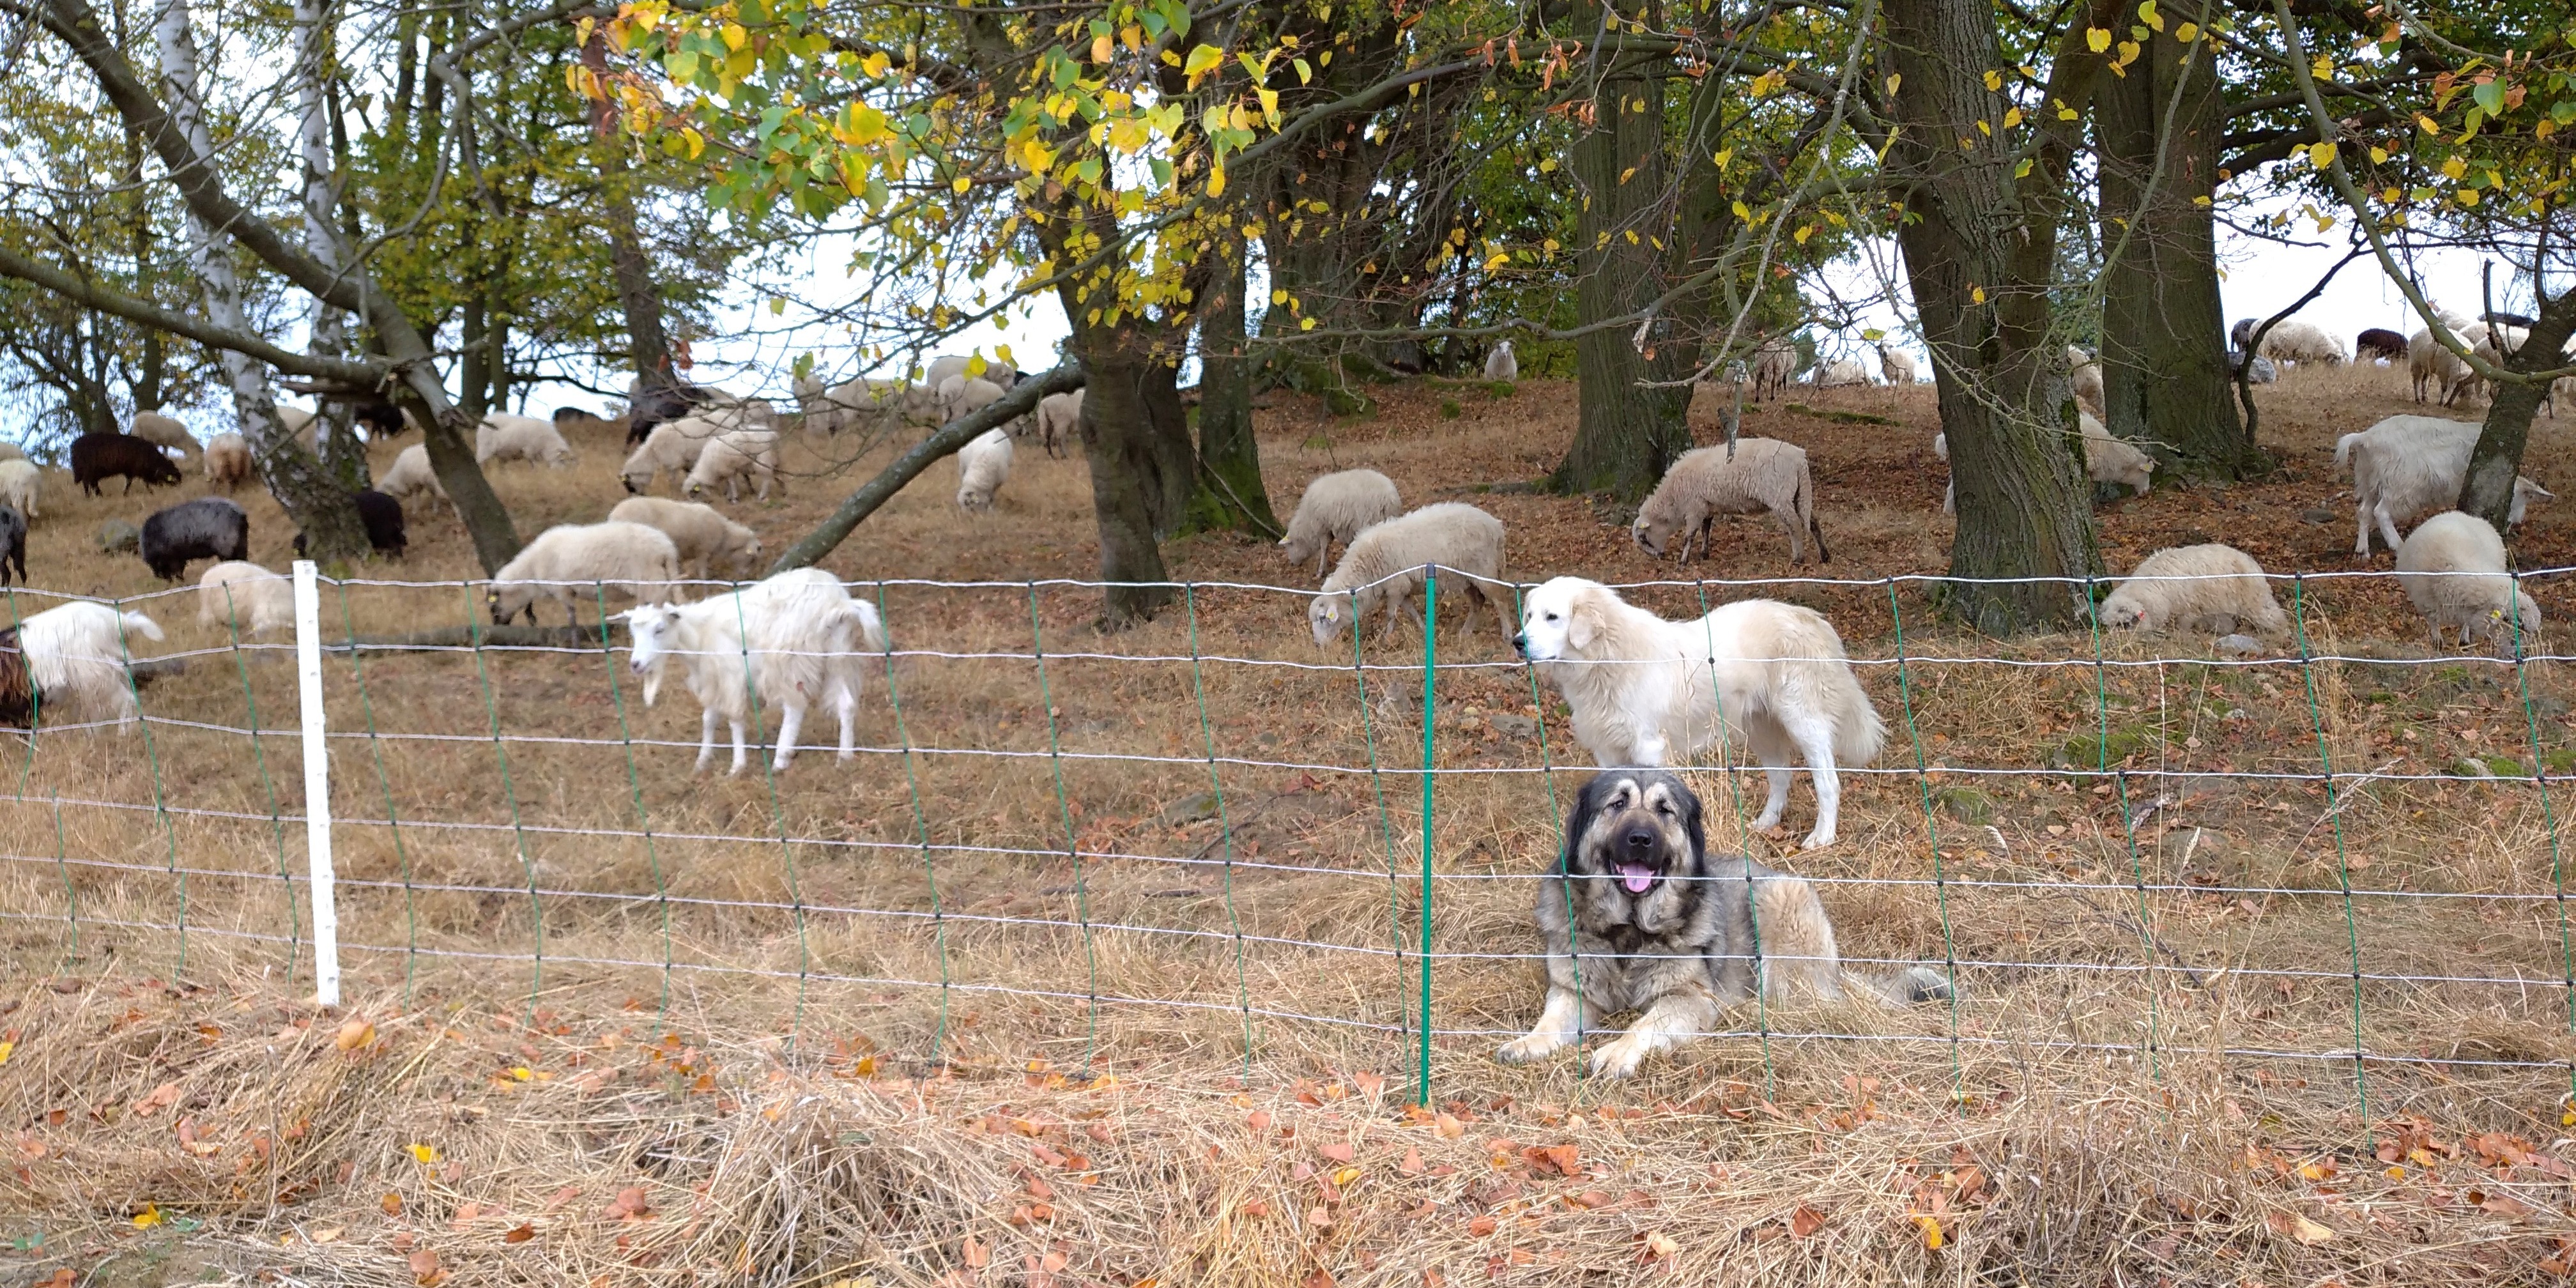 Smíšené stádo ovcí a koz za elektrickým hrazením hlídané dvěma ovčáckými psy.